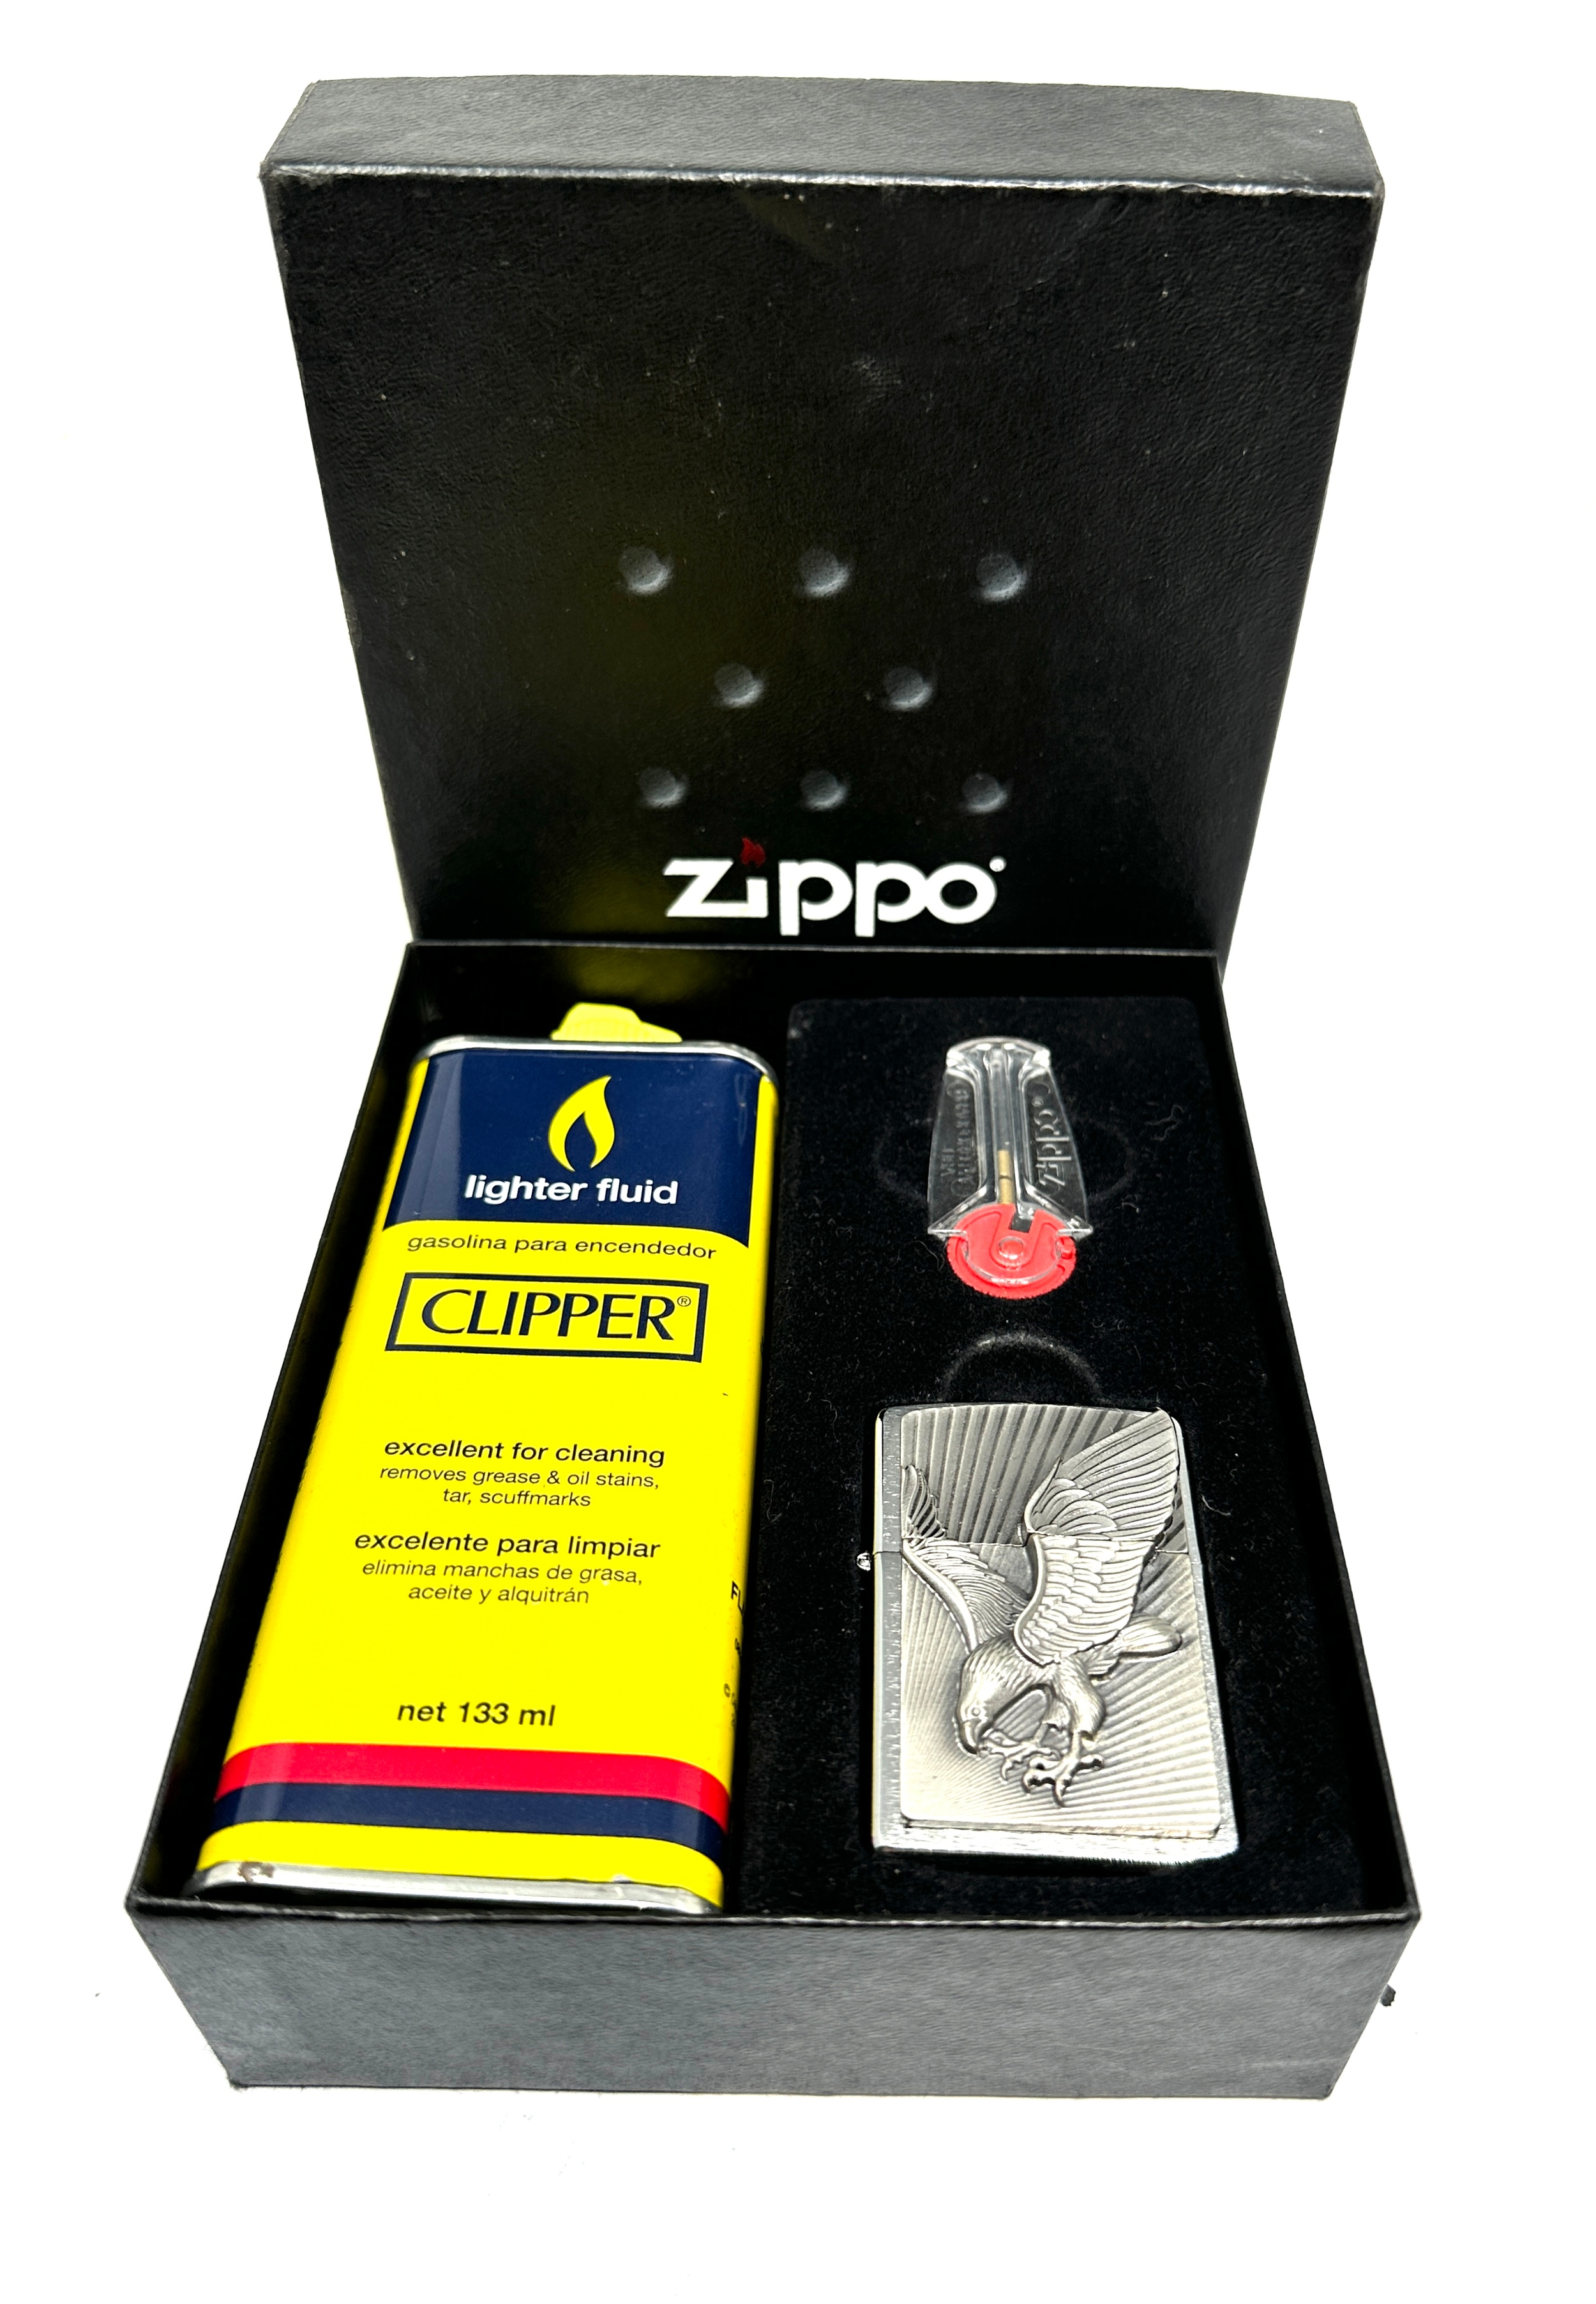 Boxed Zippo lighter